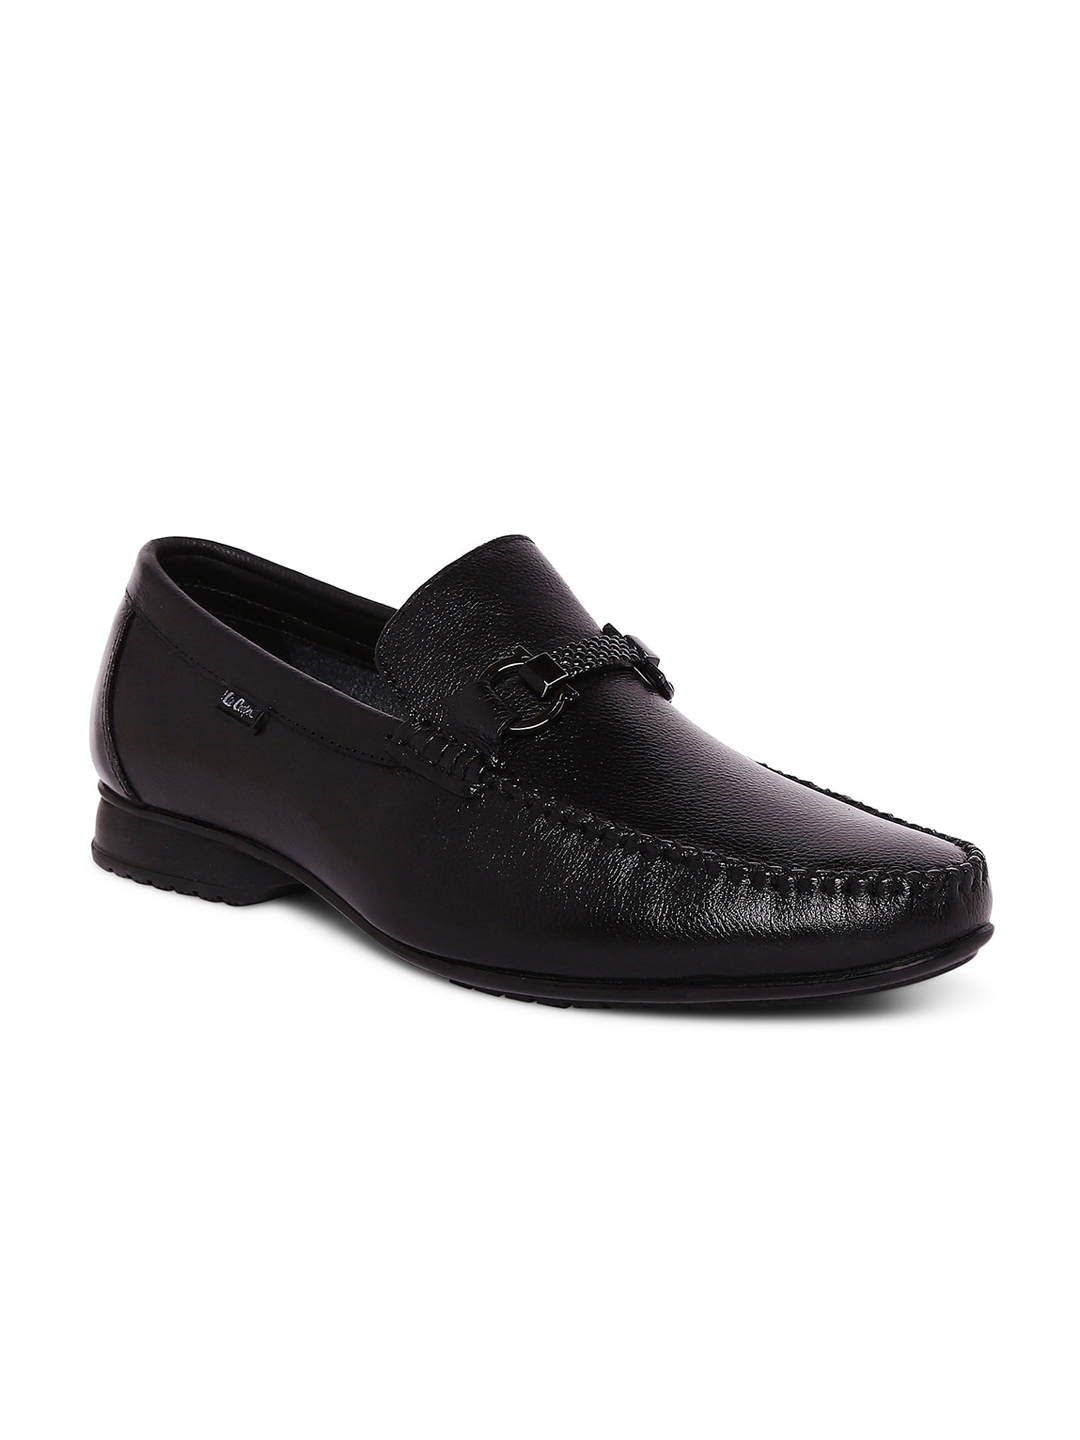 Buy Lee Cooper Men Black Leather Horsebit Loafers - Formal Shoes for ...